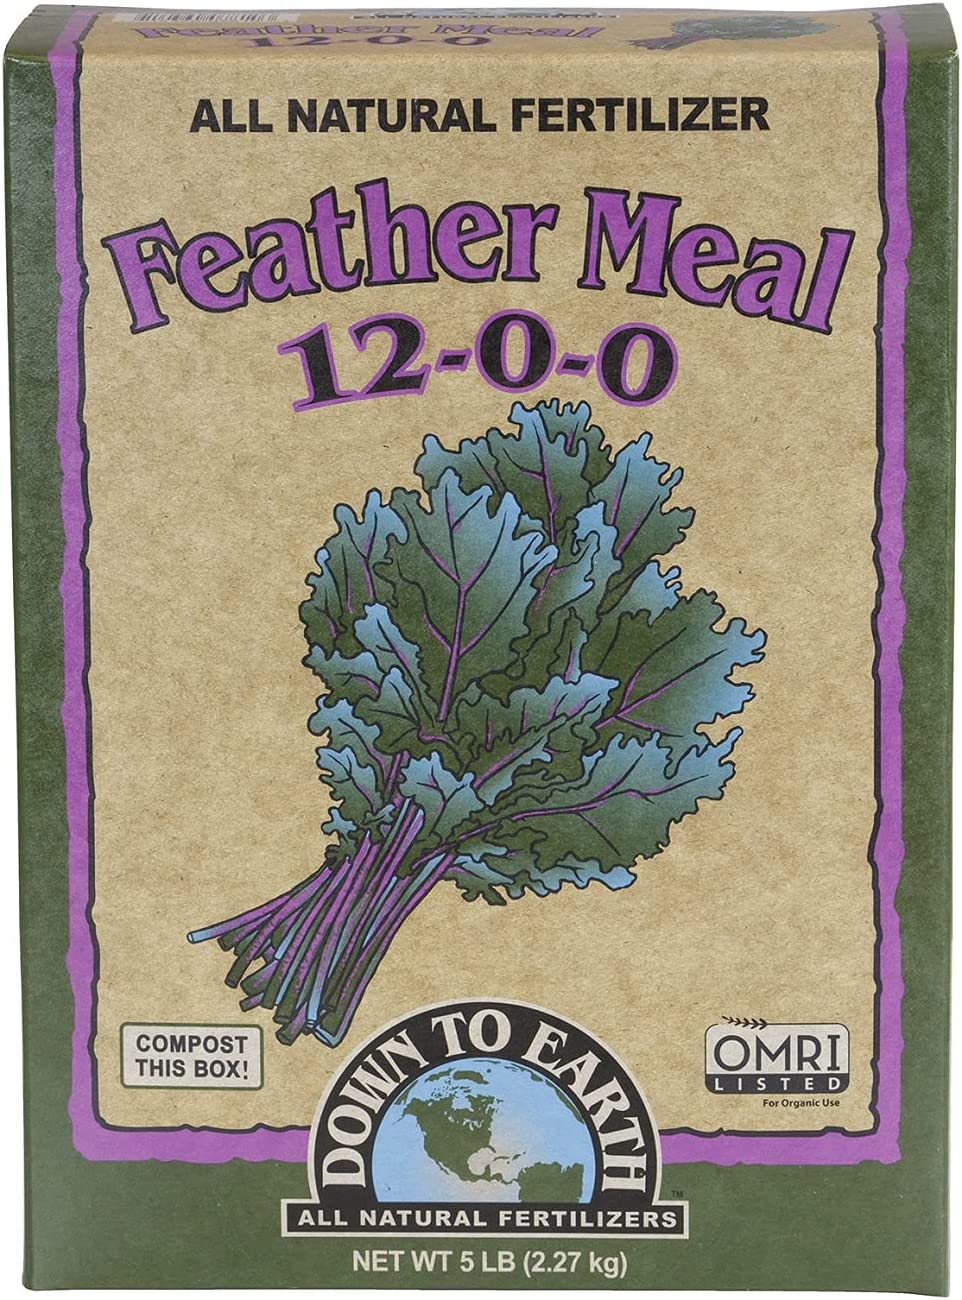 羽毛粉有机肥 Down to Earth Organic Feather Meal (12-0-0)